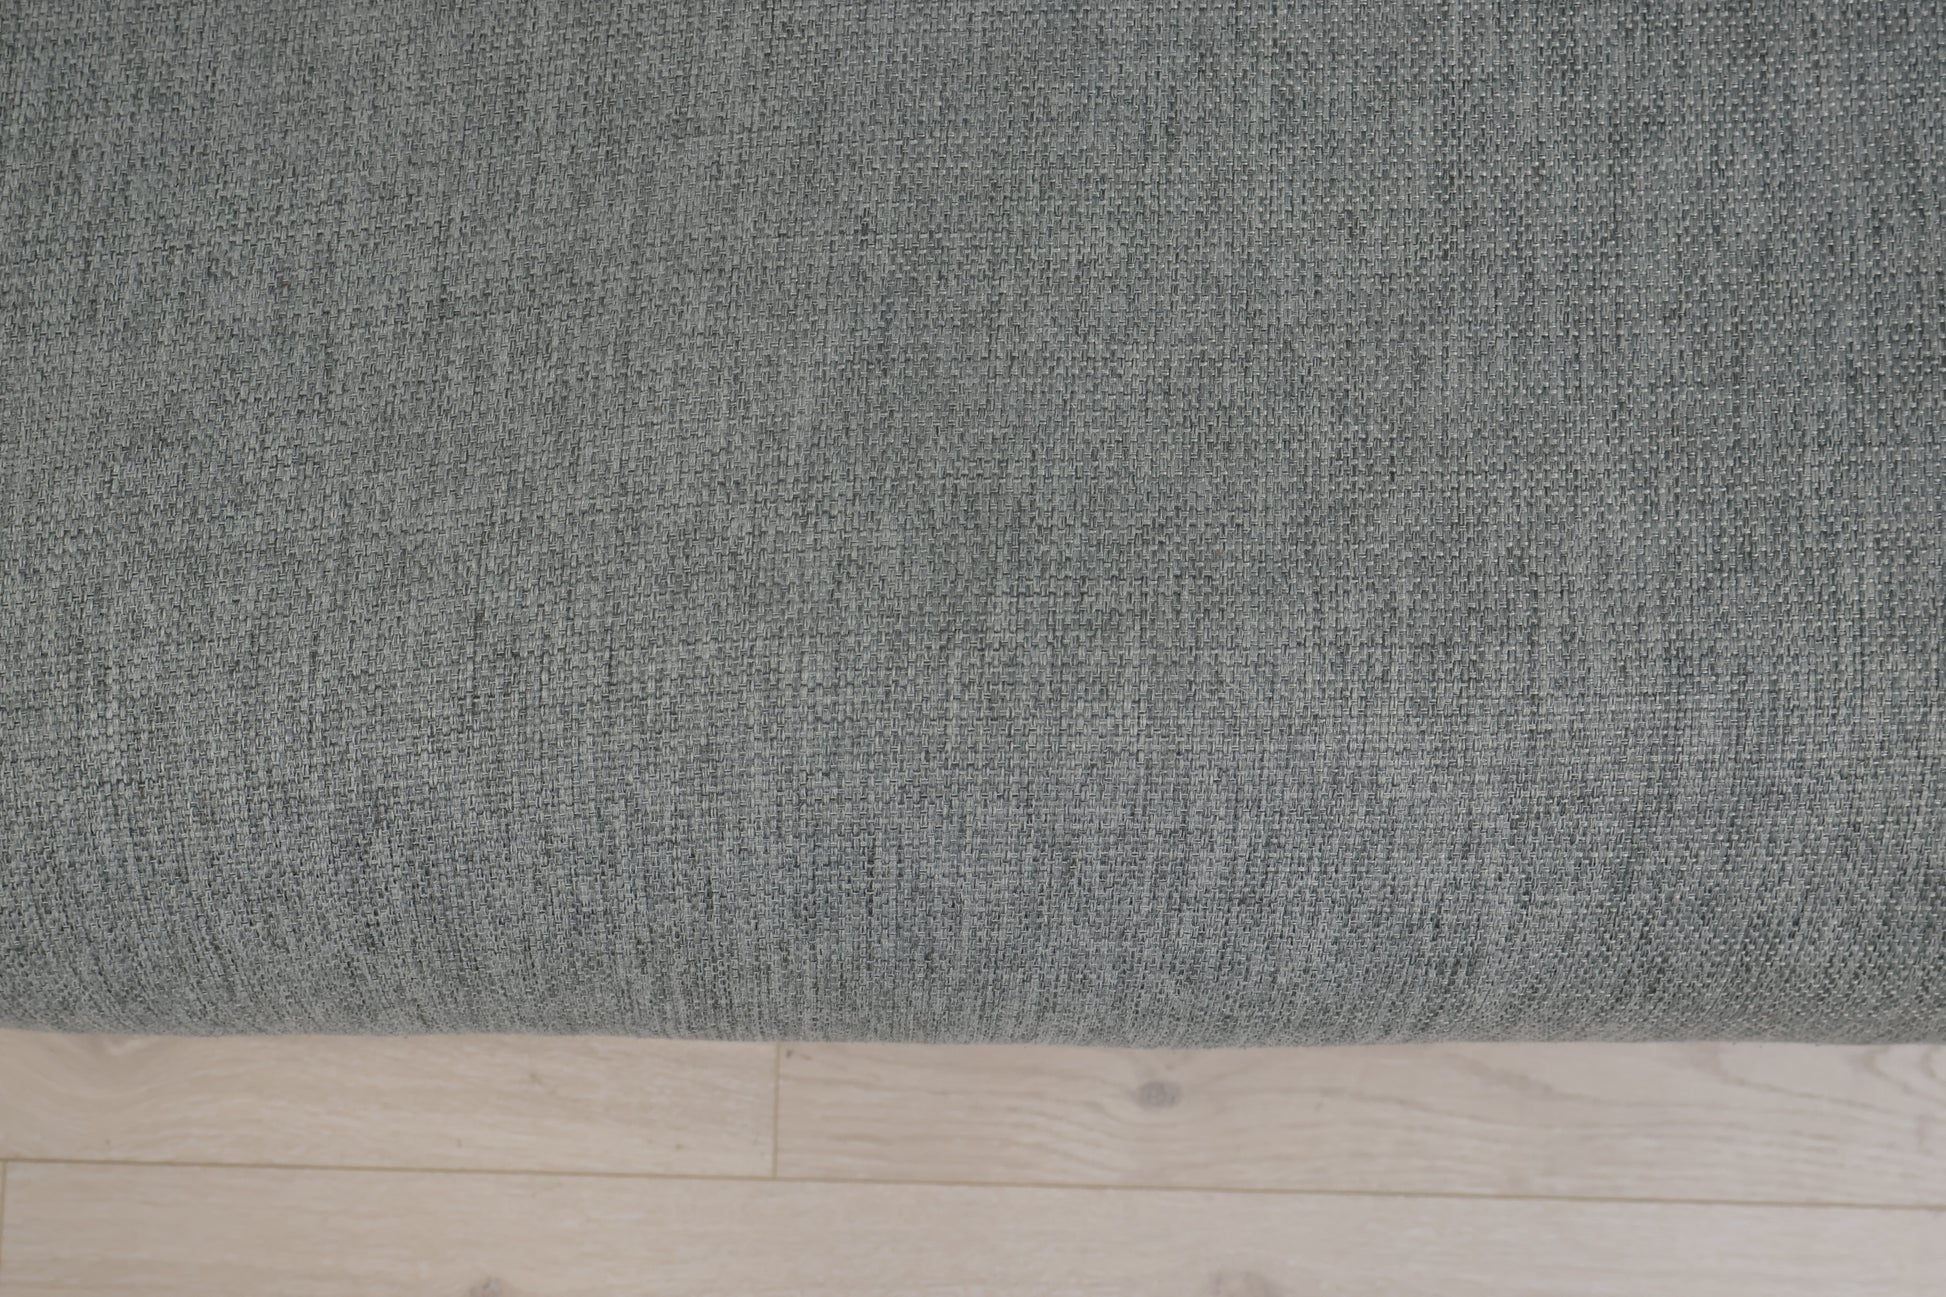 Nyrenset | Grå/grønn Bolia Sepia 3-seter sofa